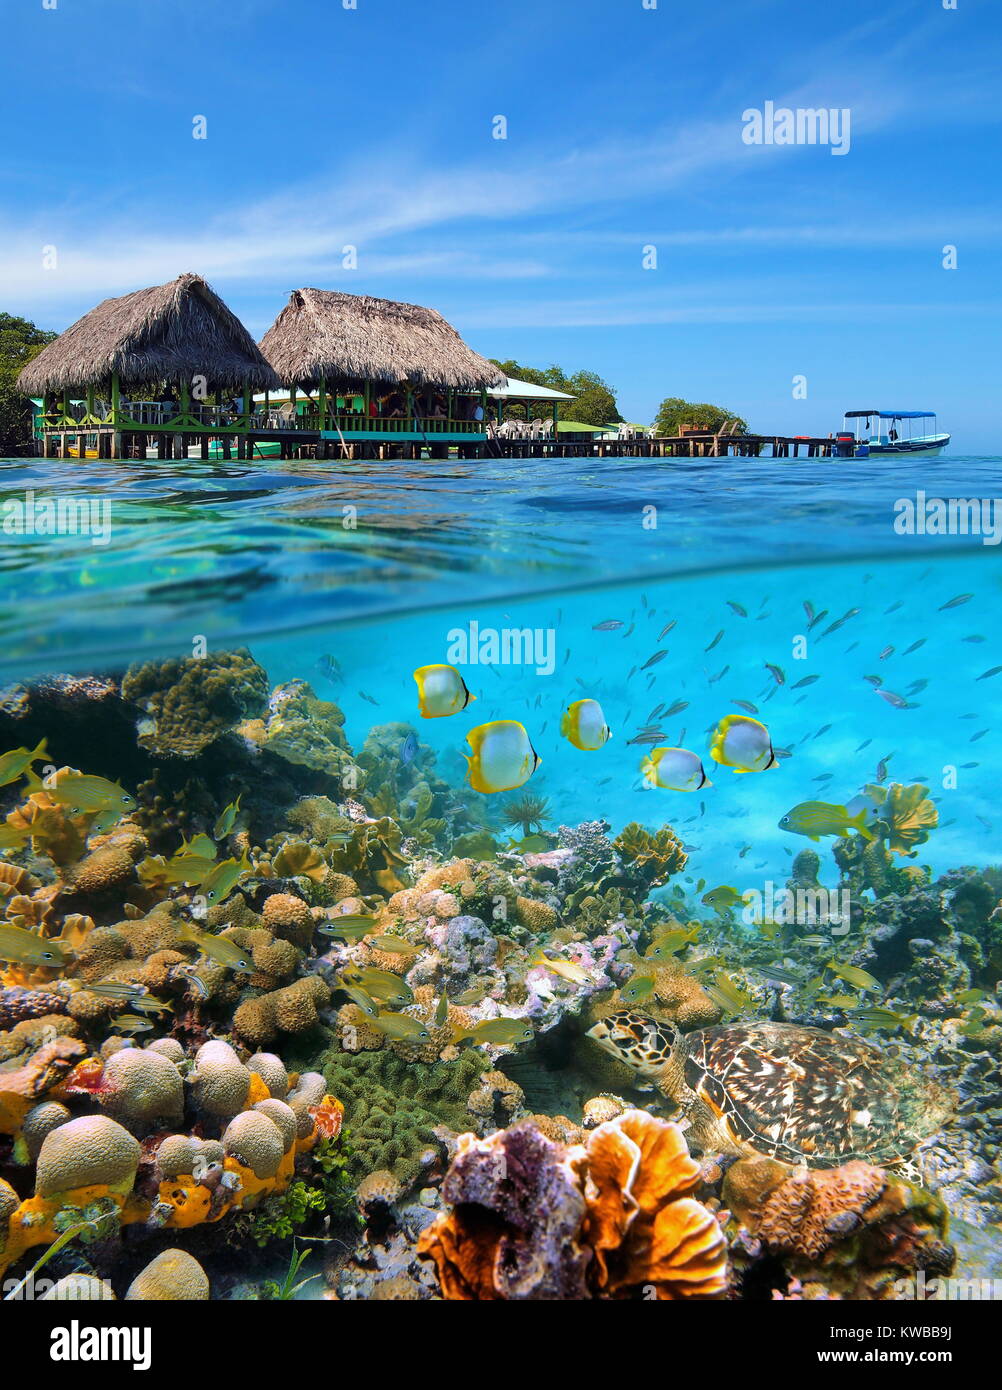 Un restaurant tropical avec des huttes au toit de chaume au-dessus de l'eau et un récif de corail avec des poissons et une tortue de mer sous l'eau, mer des Caraïbes, le Panama Banque D'Images